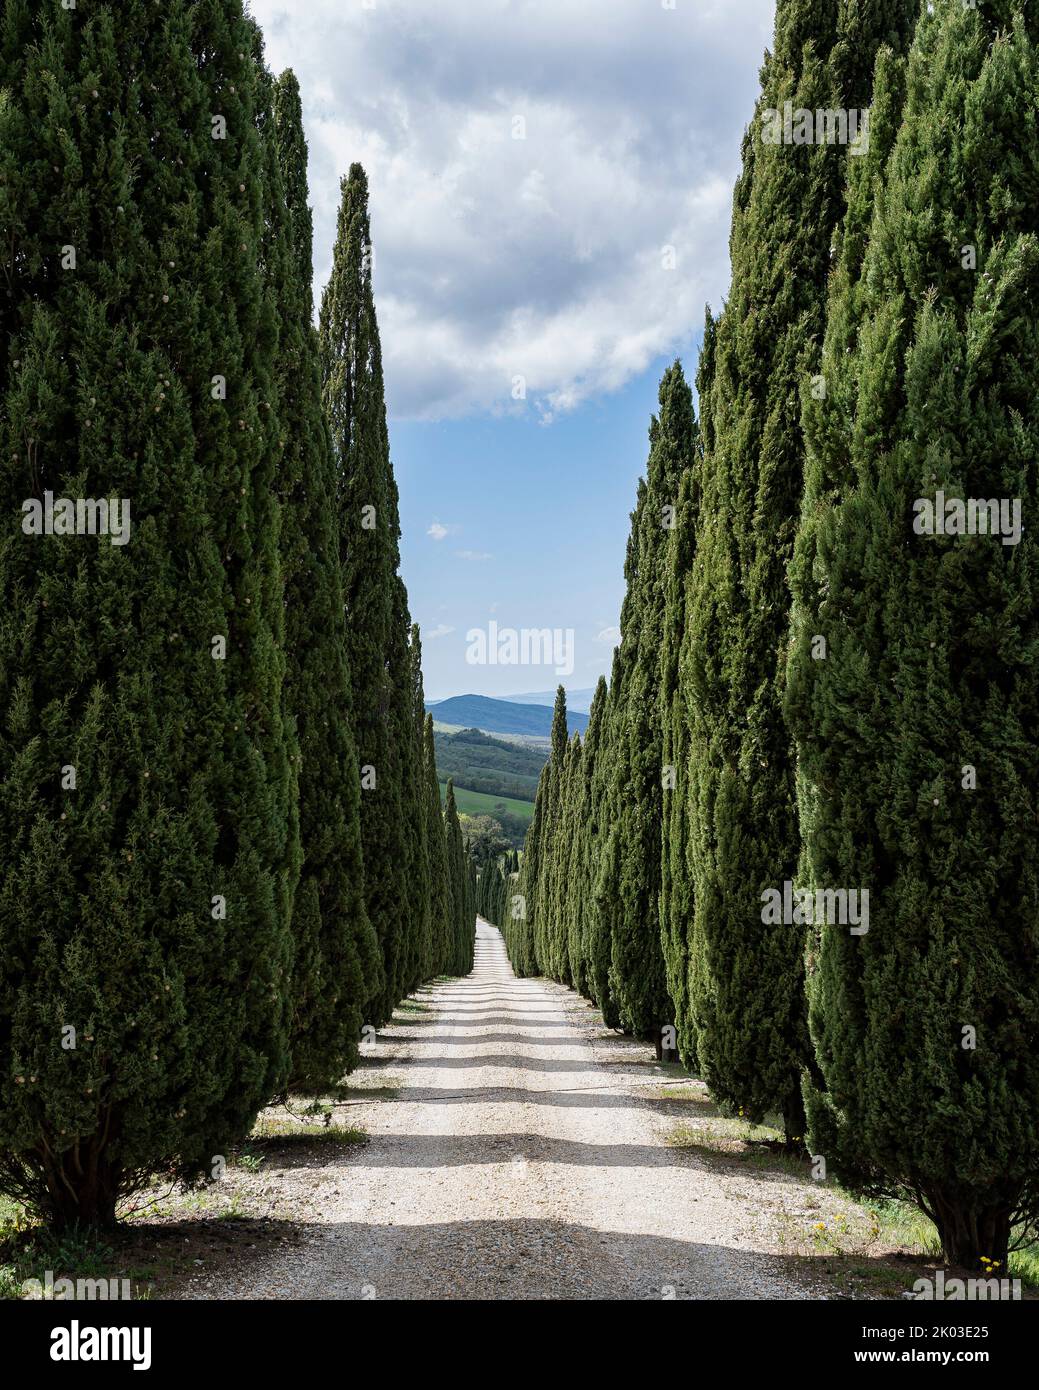 Street with cypress trees, Siena, Tuscany, Italy Stock Photo